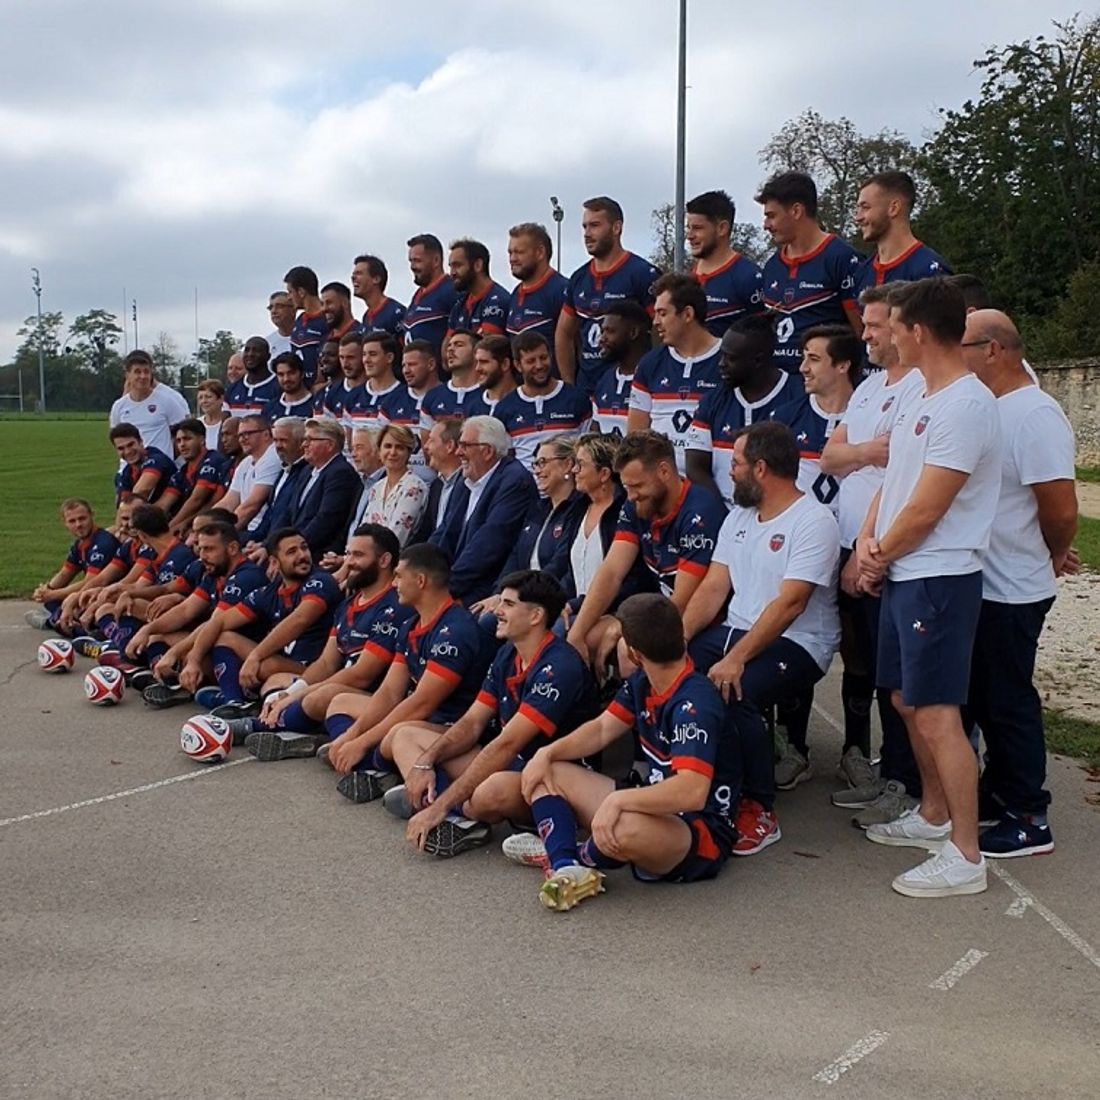 L'équipe du Stade Dijonnais au grand complet lors de la photo officielle en septembre dernier 